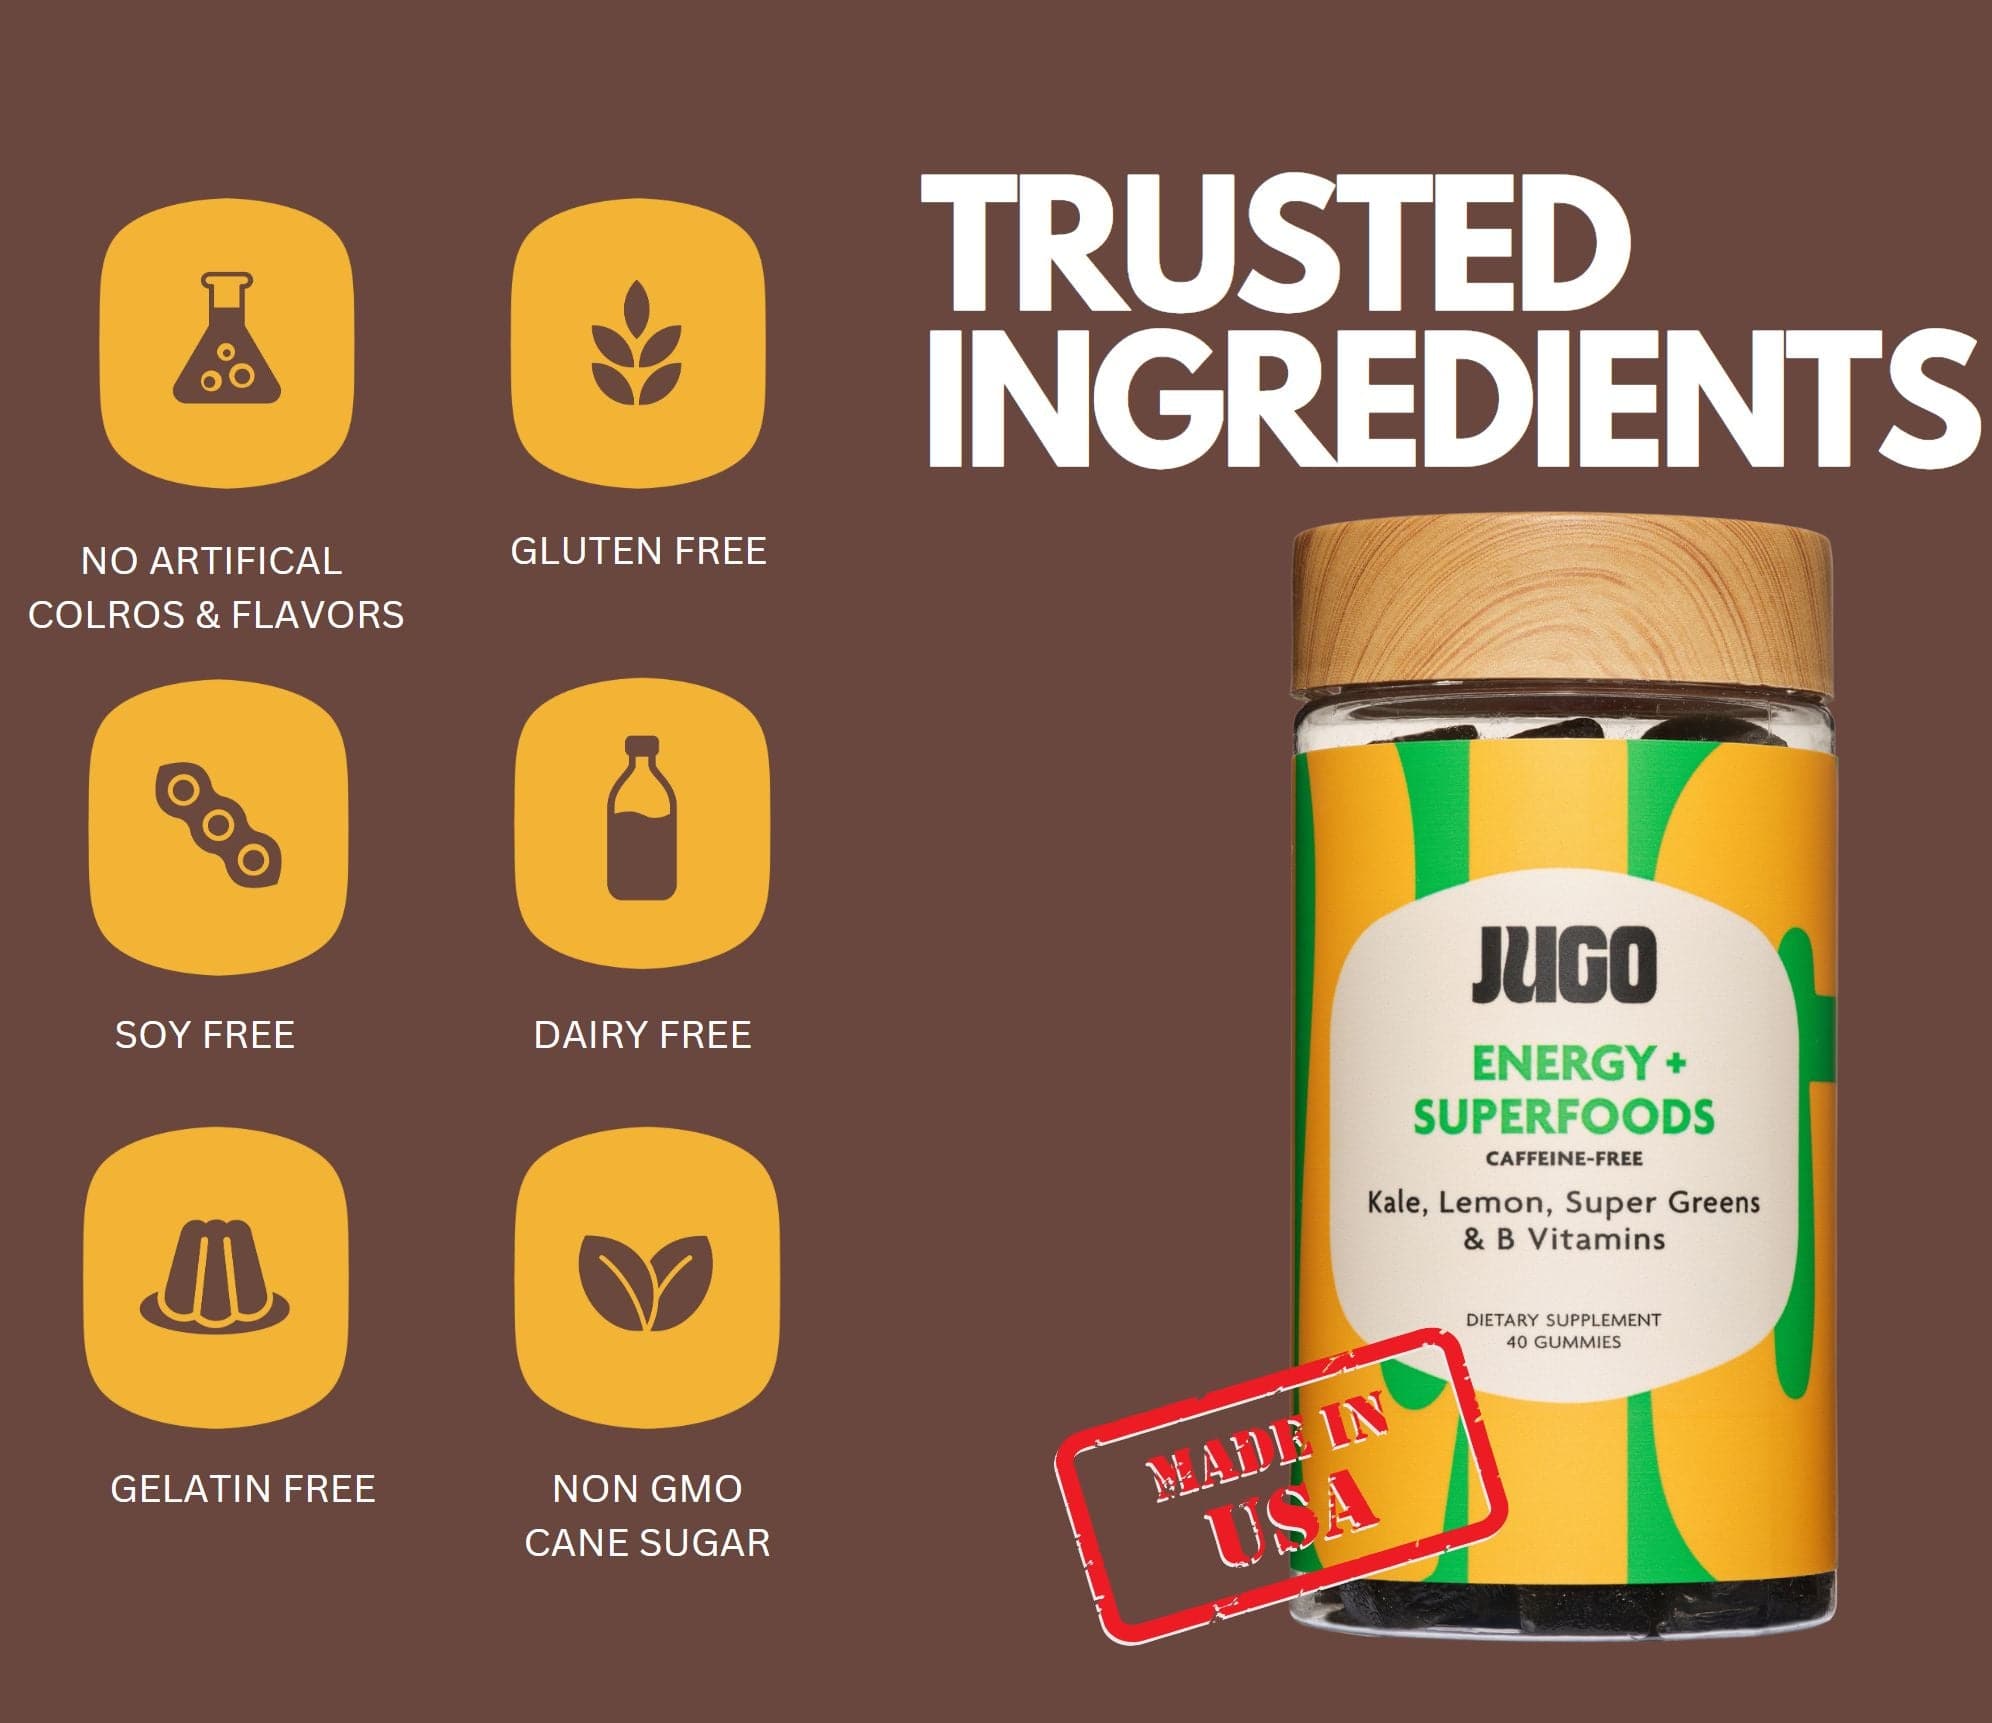 Trusted ingredients in JUGO ENERGY + SUPERFOODS gummies